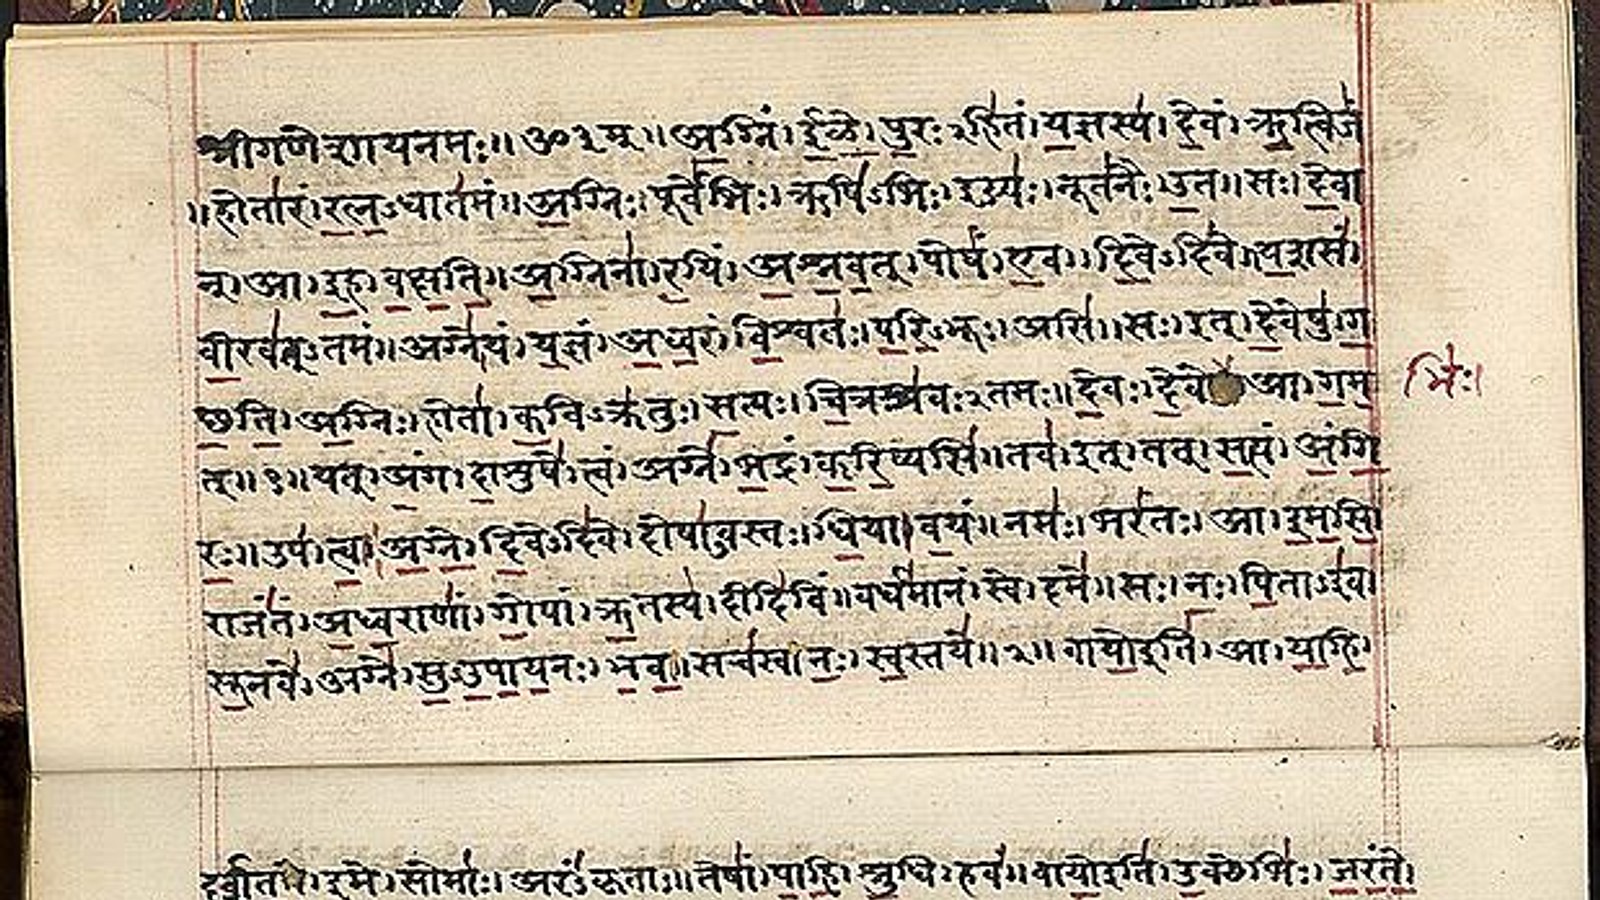 vedas in sanskrit